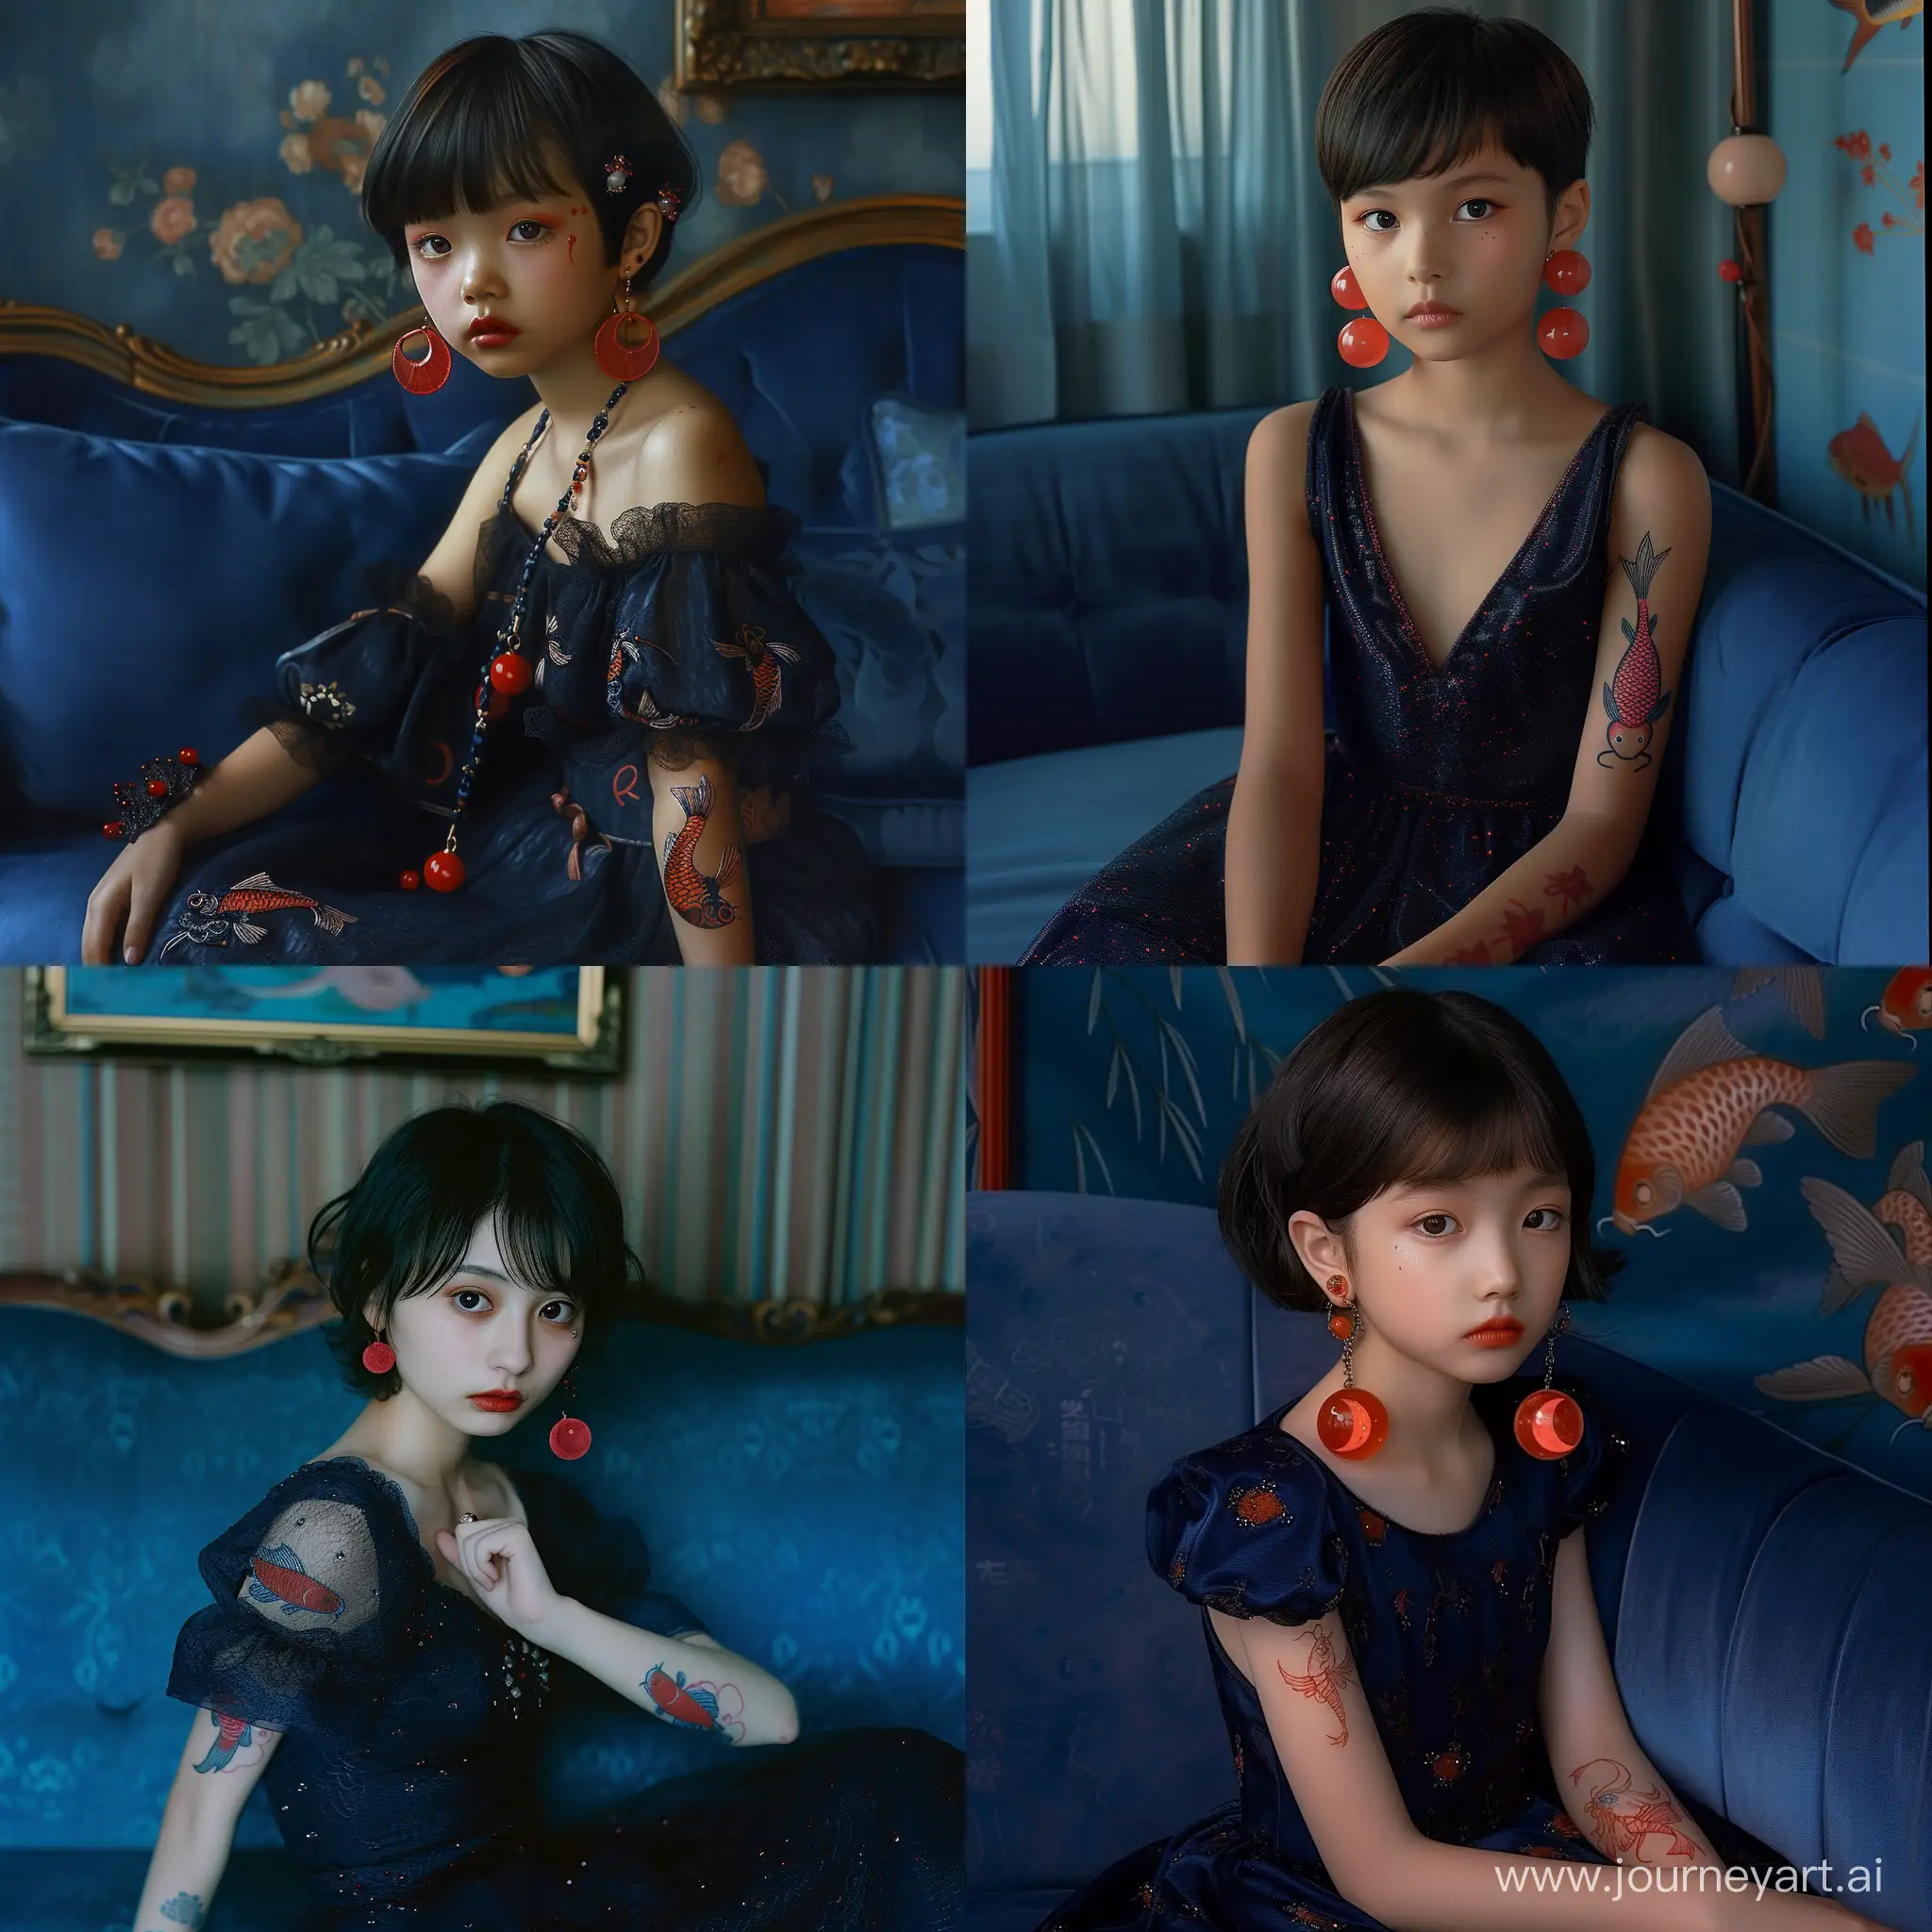 Молодая японская девушка, сидит на синем диване, на ней вечернее темное платье, прическа короткая, серьги в виде красных месяцев, на запястье татуировка карпа